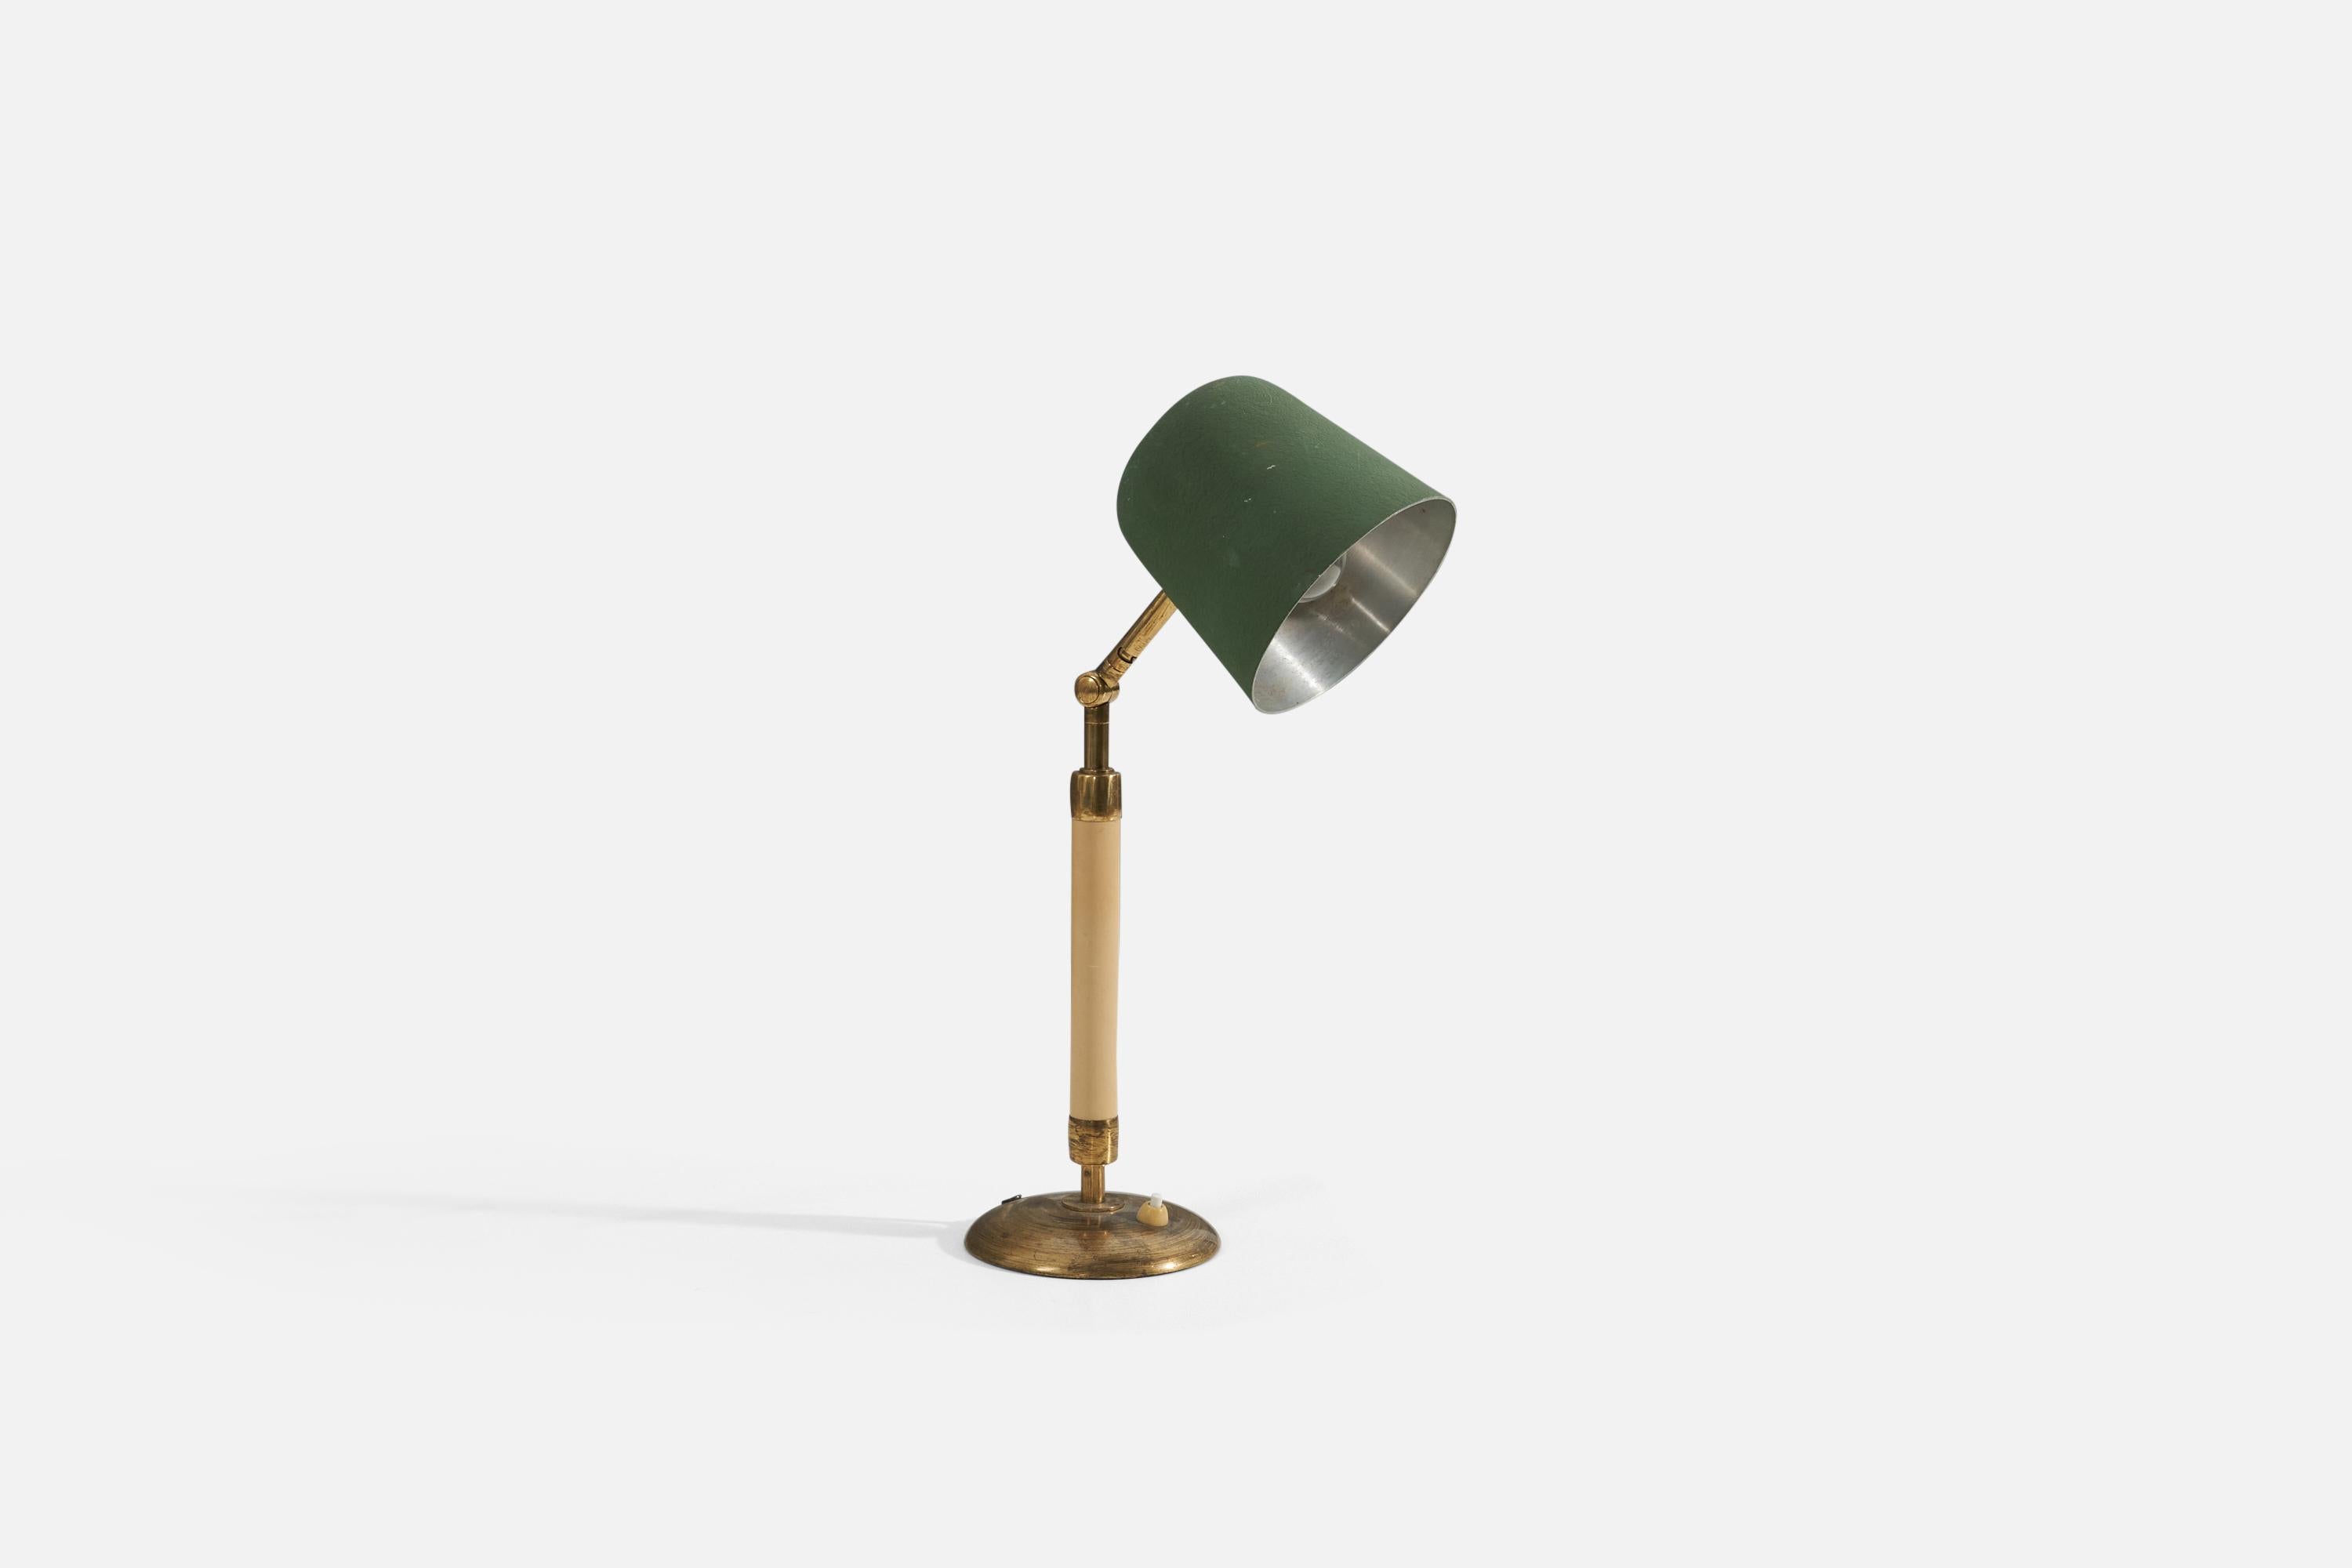 Eine Tischlampe, die Bertil Brisborg für Nordiska Kompaniet zugeschrieben wird. Produziert in Schweden, 1940er Jahre. Die Lampe hat einen Sockel aus Messing, einen Schaft aus Bakelit und einen grün lackierten Metallschirm.